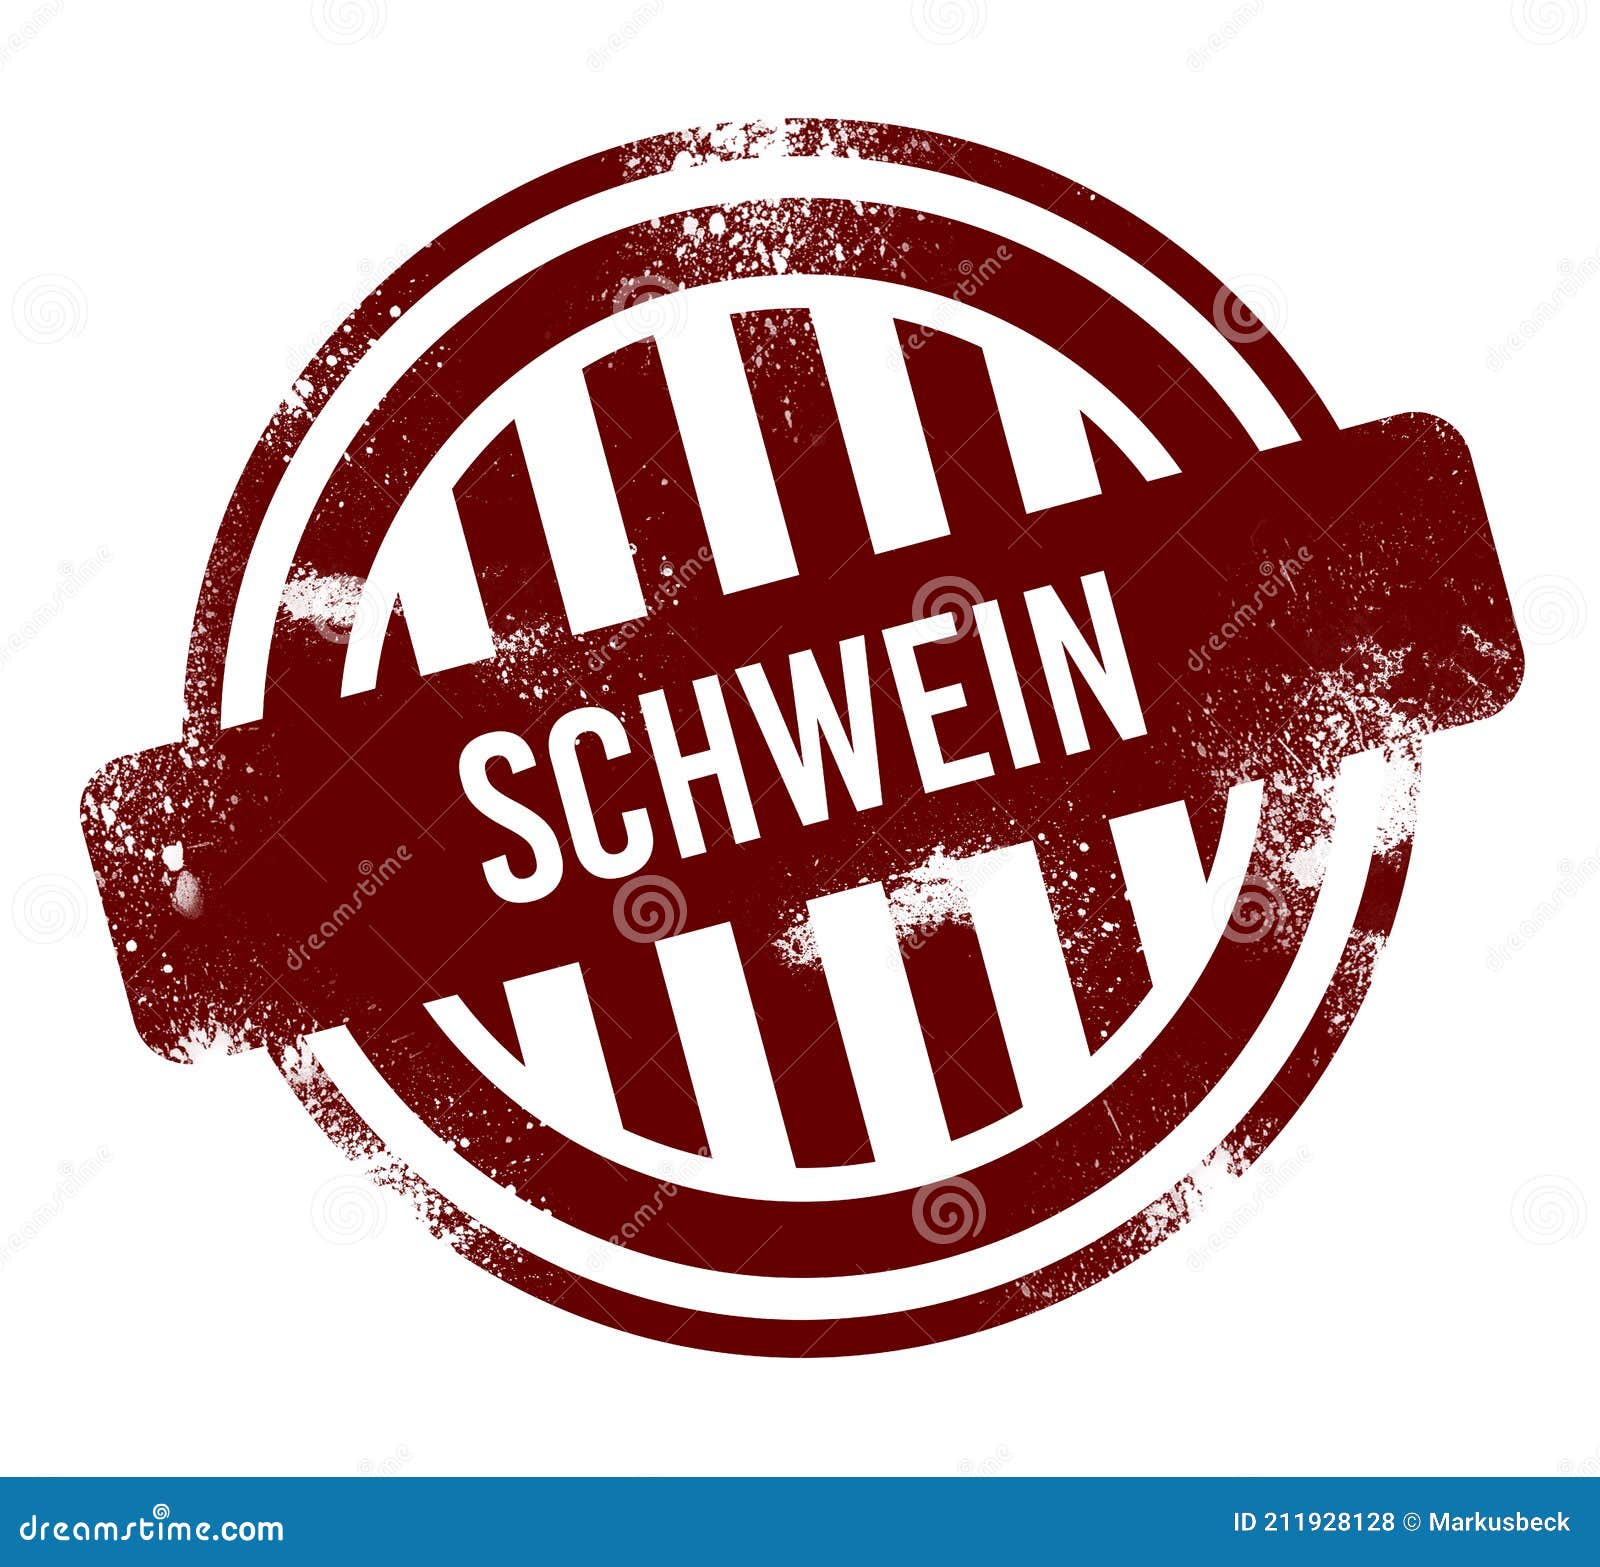 schwein - red round grunge button, stamp